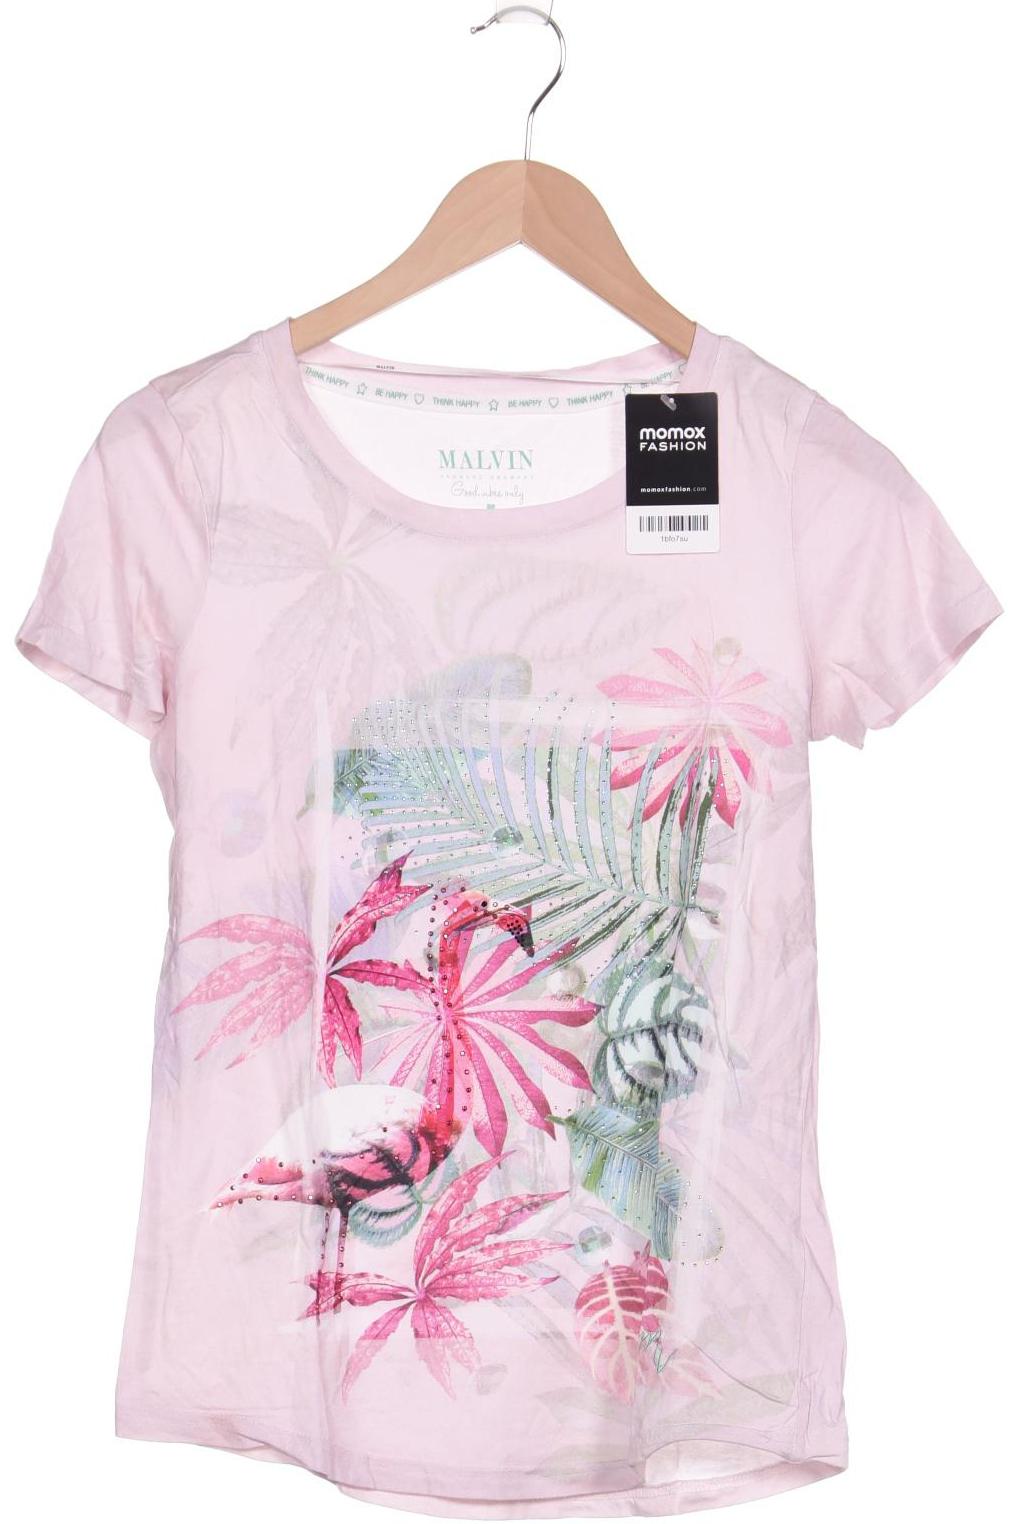 Malvin Damen T-Shirt, pink, Gr. 36 von MALVIN